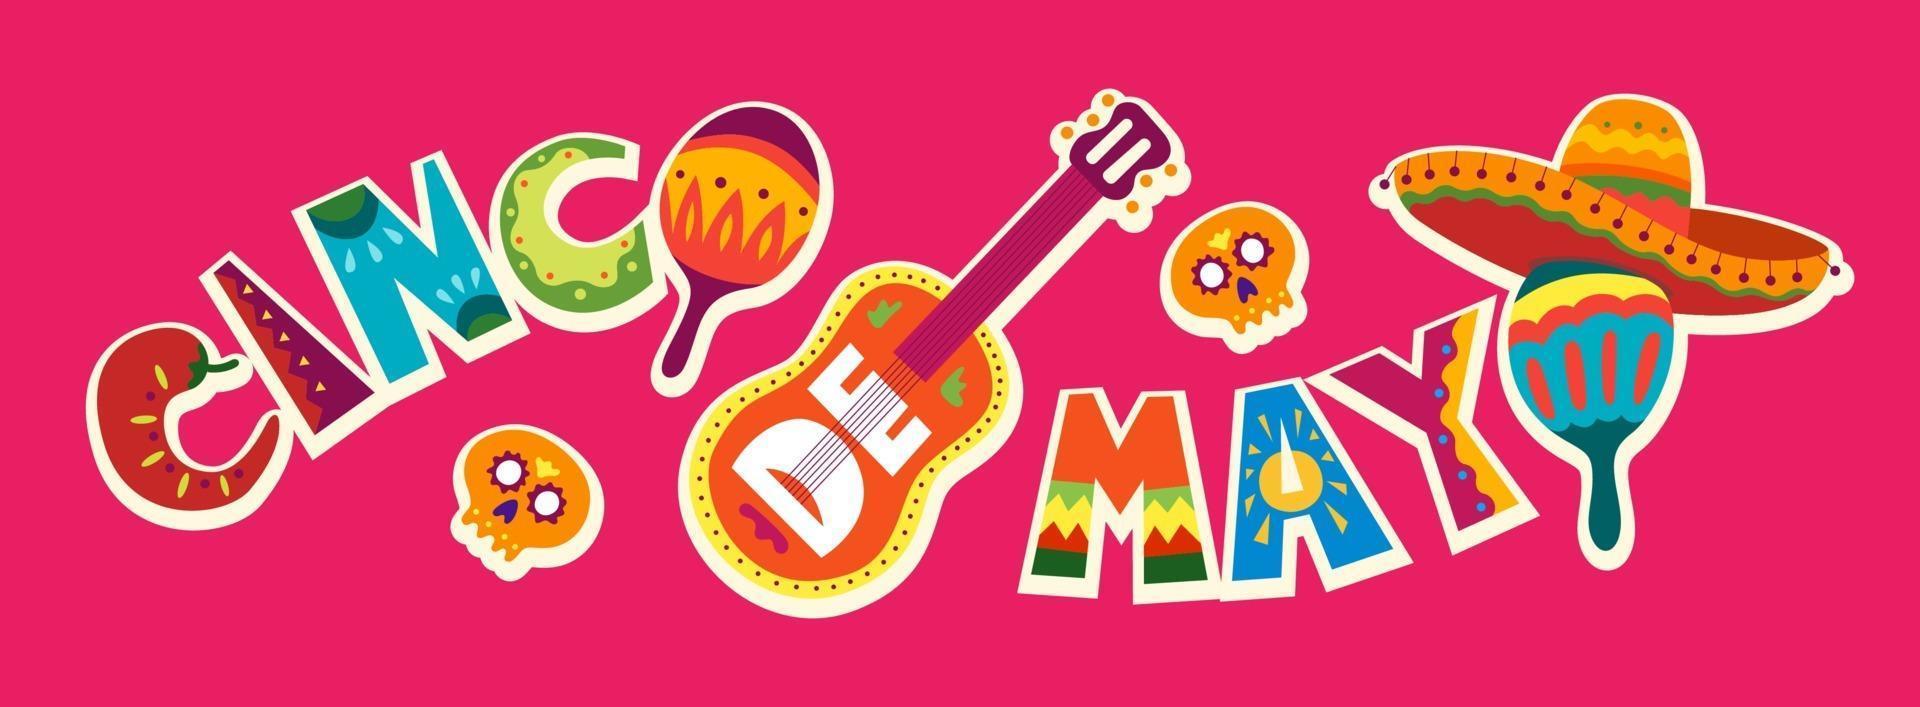 celebrazione del cinco de mayo in messico. 5 maggio, vacanza in america latina. sfondo colorato, dettagliato, con tanti oggetti. modello di vettore con teschio simboli messicani tradizionali, chitarra, fiori, peperone rosso